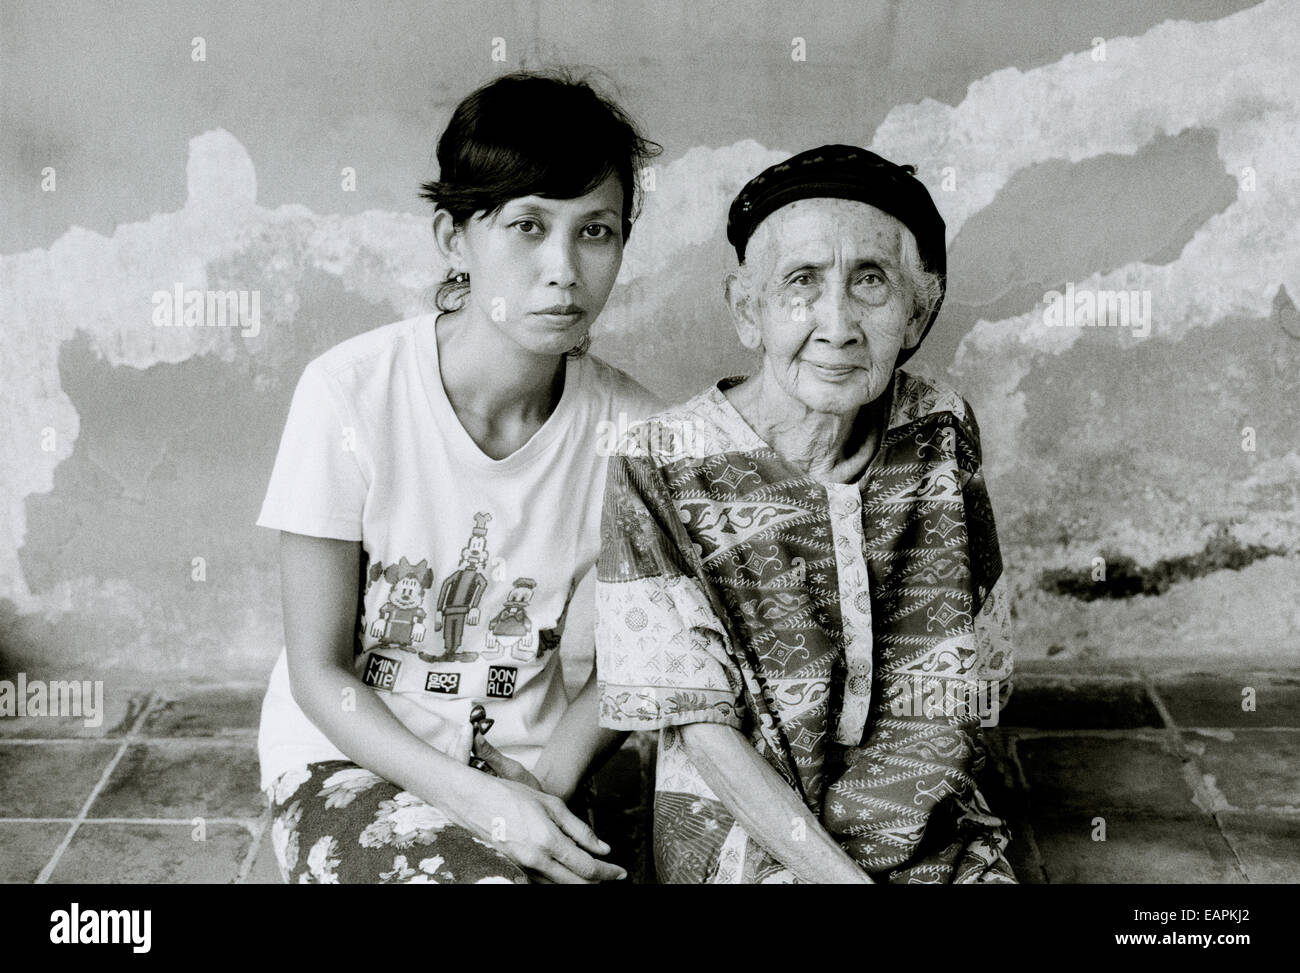 Vieille dame et son arrière petite-fille de Yogyakarta à Java en Indonésie en Asie du Sud-Est Extrême-Orient. Le peuple indonésien reportage Voyage Photojournalisme Banque D'Images